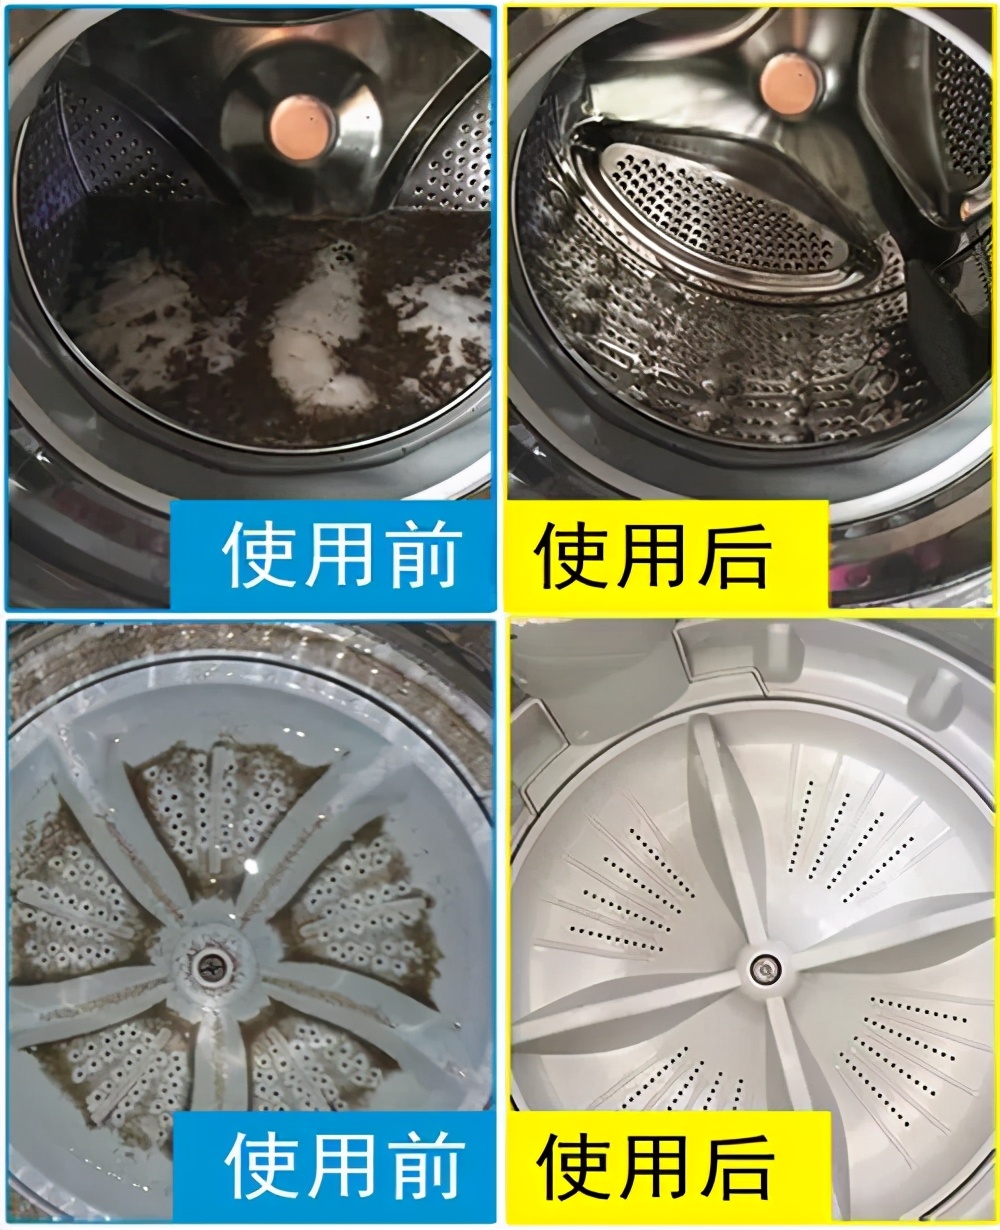 滚筒洗衣机怎么清理污垢 全自动洗衣机如何清晰污垢